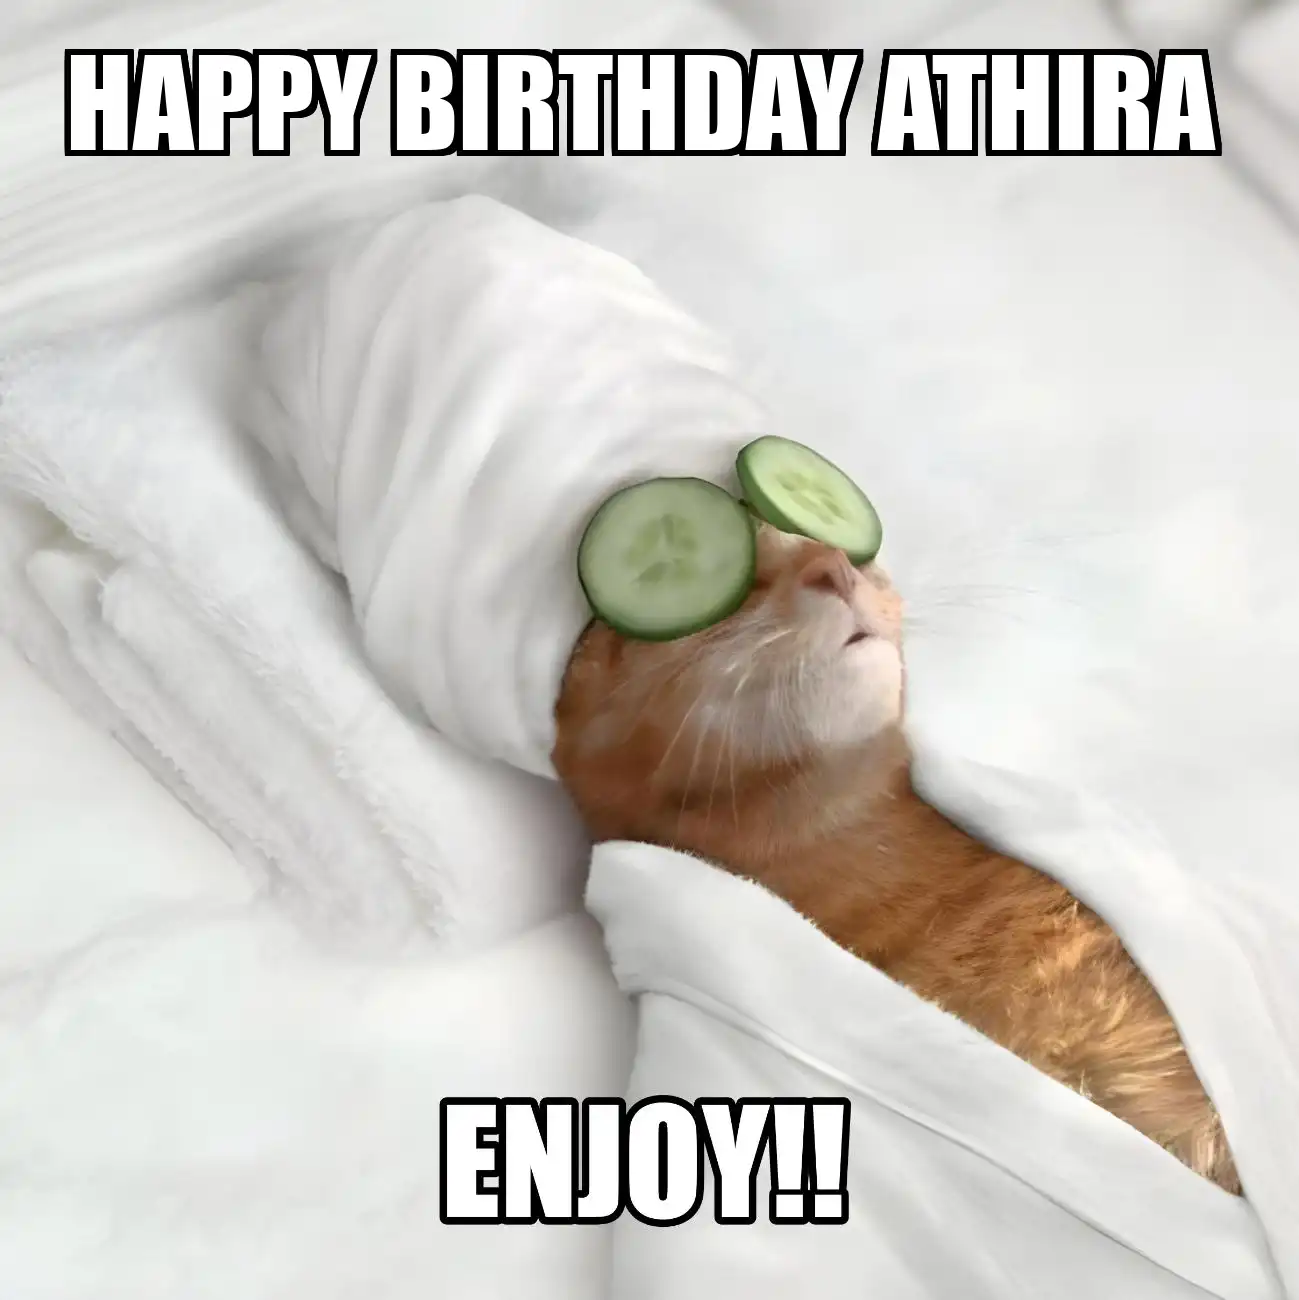 Happy Birthday Athira Enjoy Cat Meme